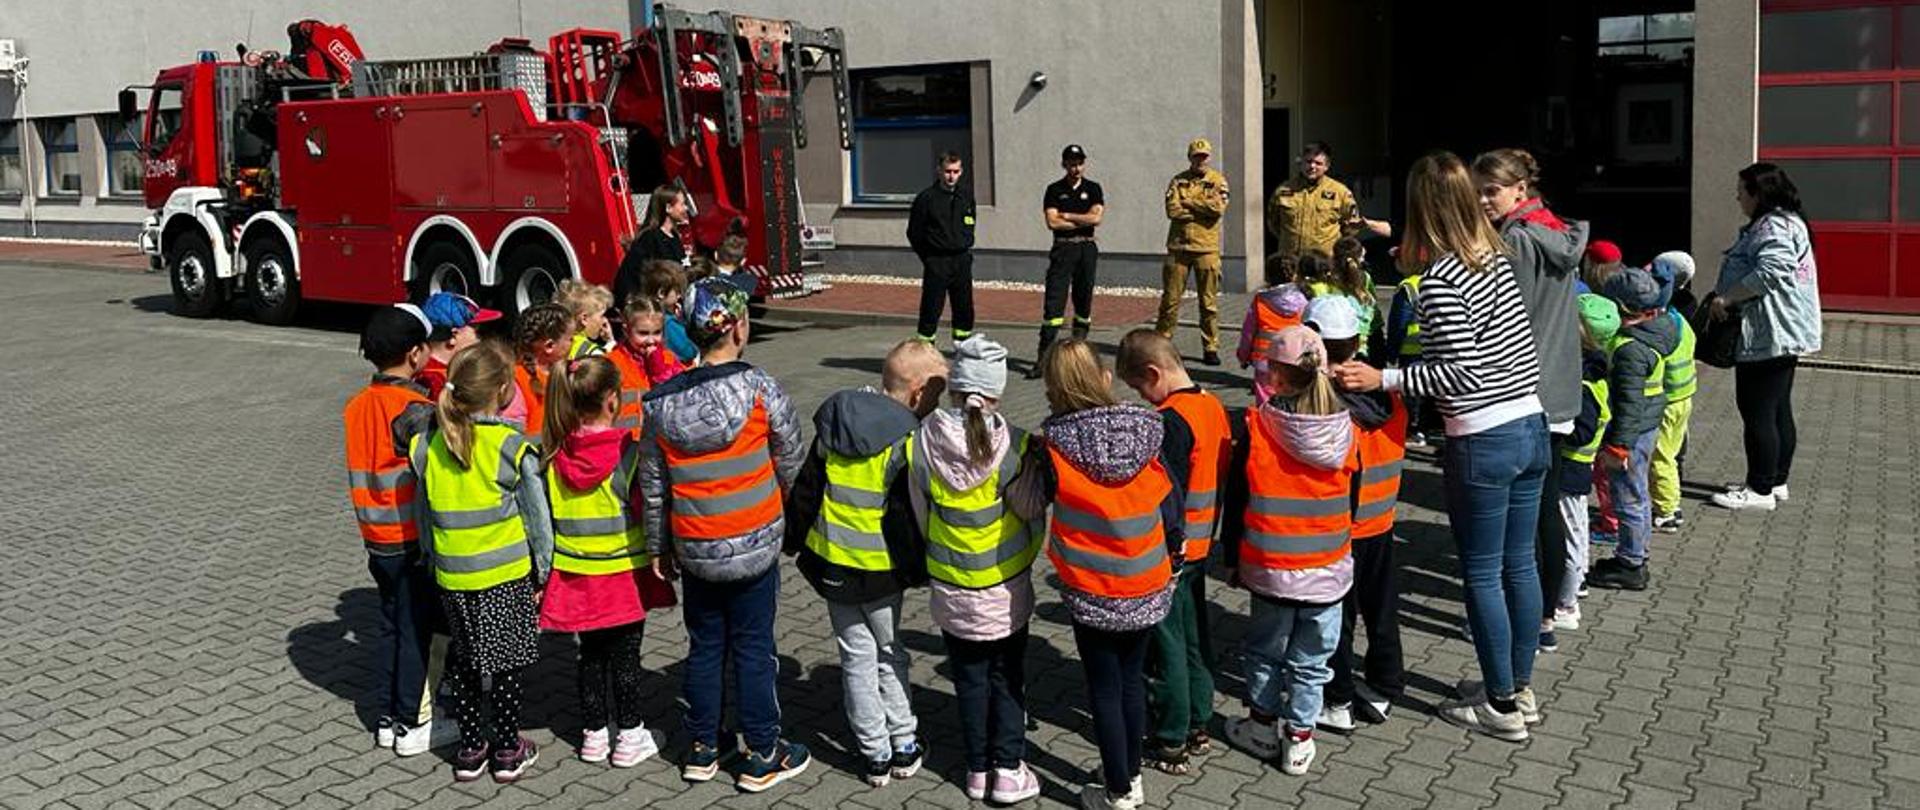 Widok z tyłu na grupę dzieci przedszkolnych wraz z wychowawcami stojącymi przed budynkiem Jednostki Ratowniczo-Gaśniczej CS PSP w głębi wóz bojowy obok którego stoją strażacy